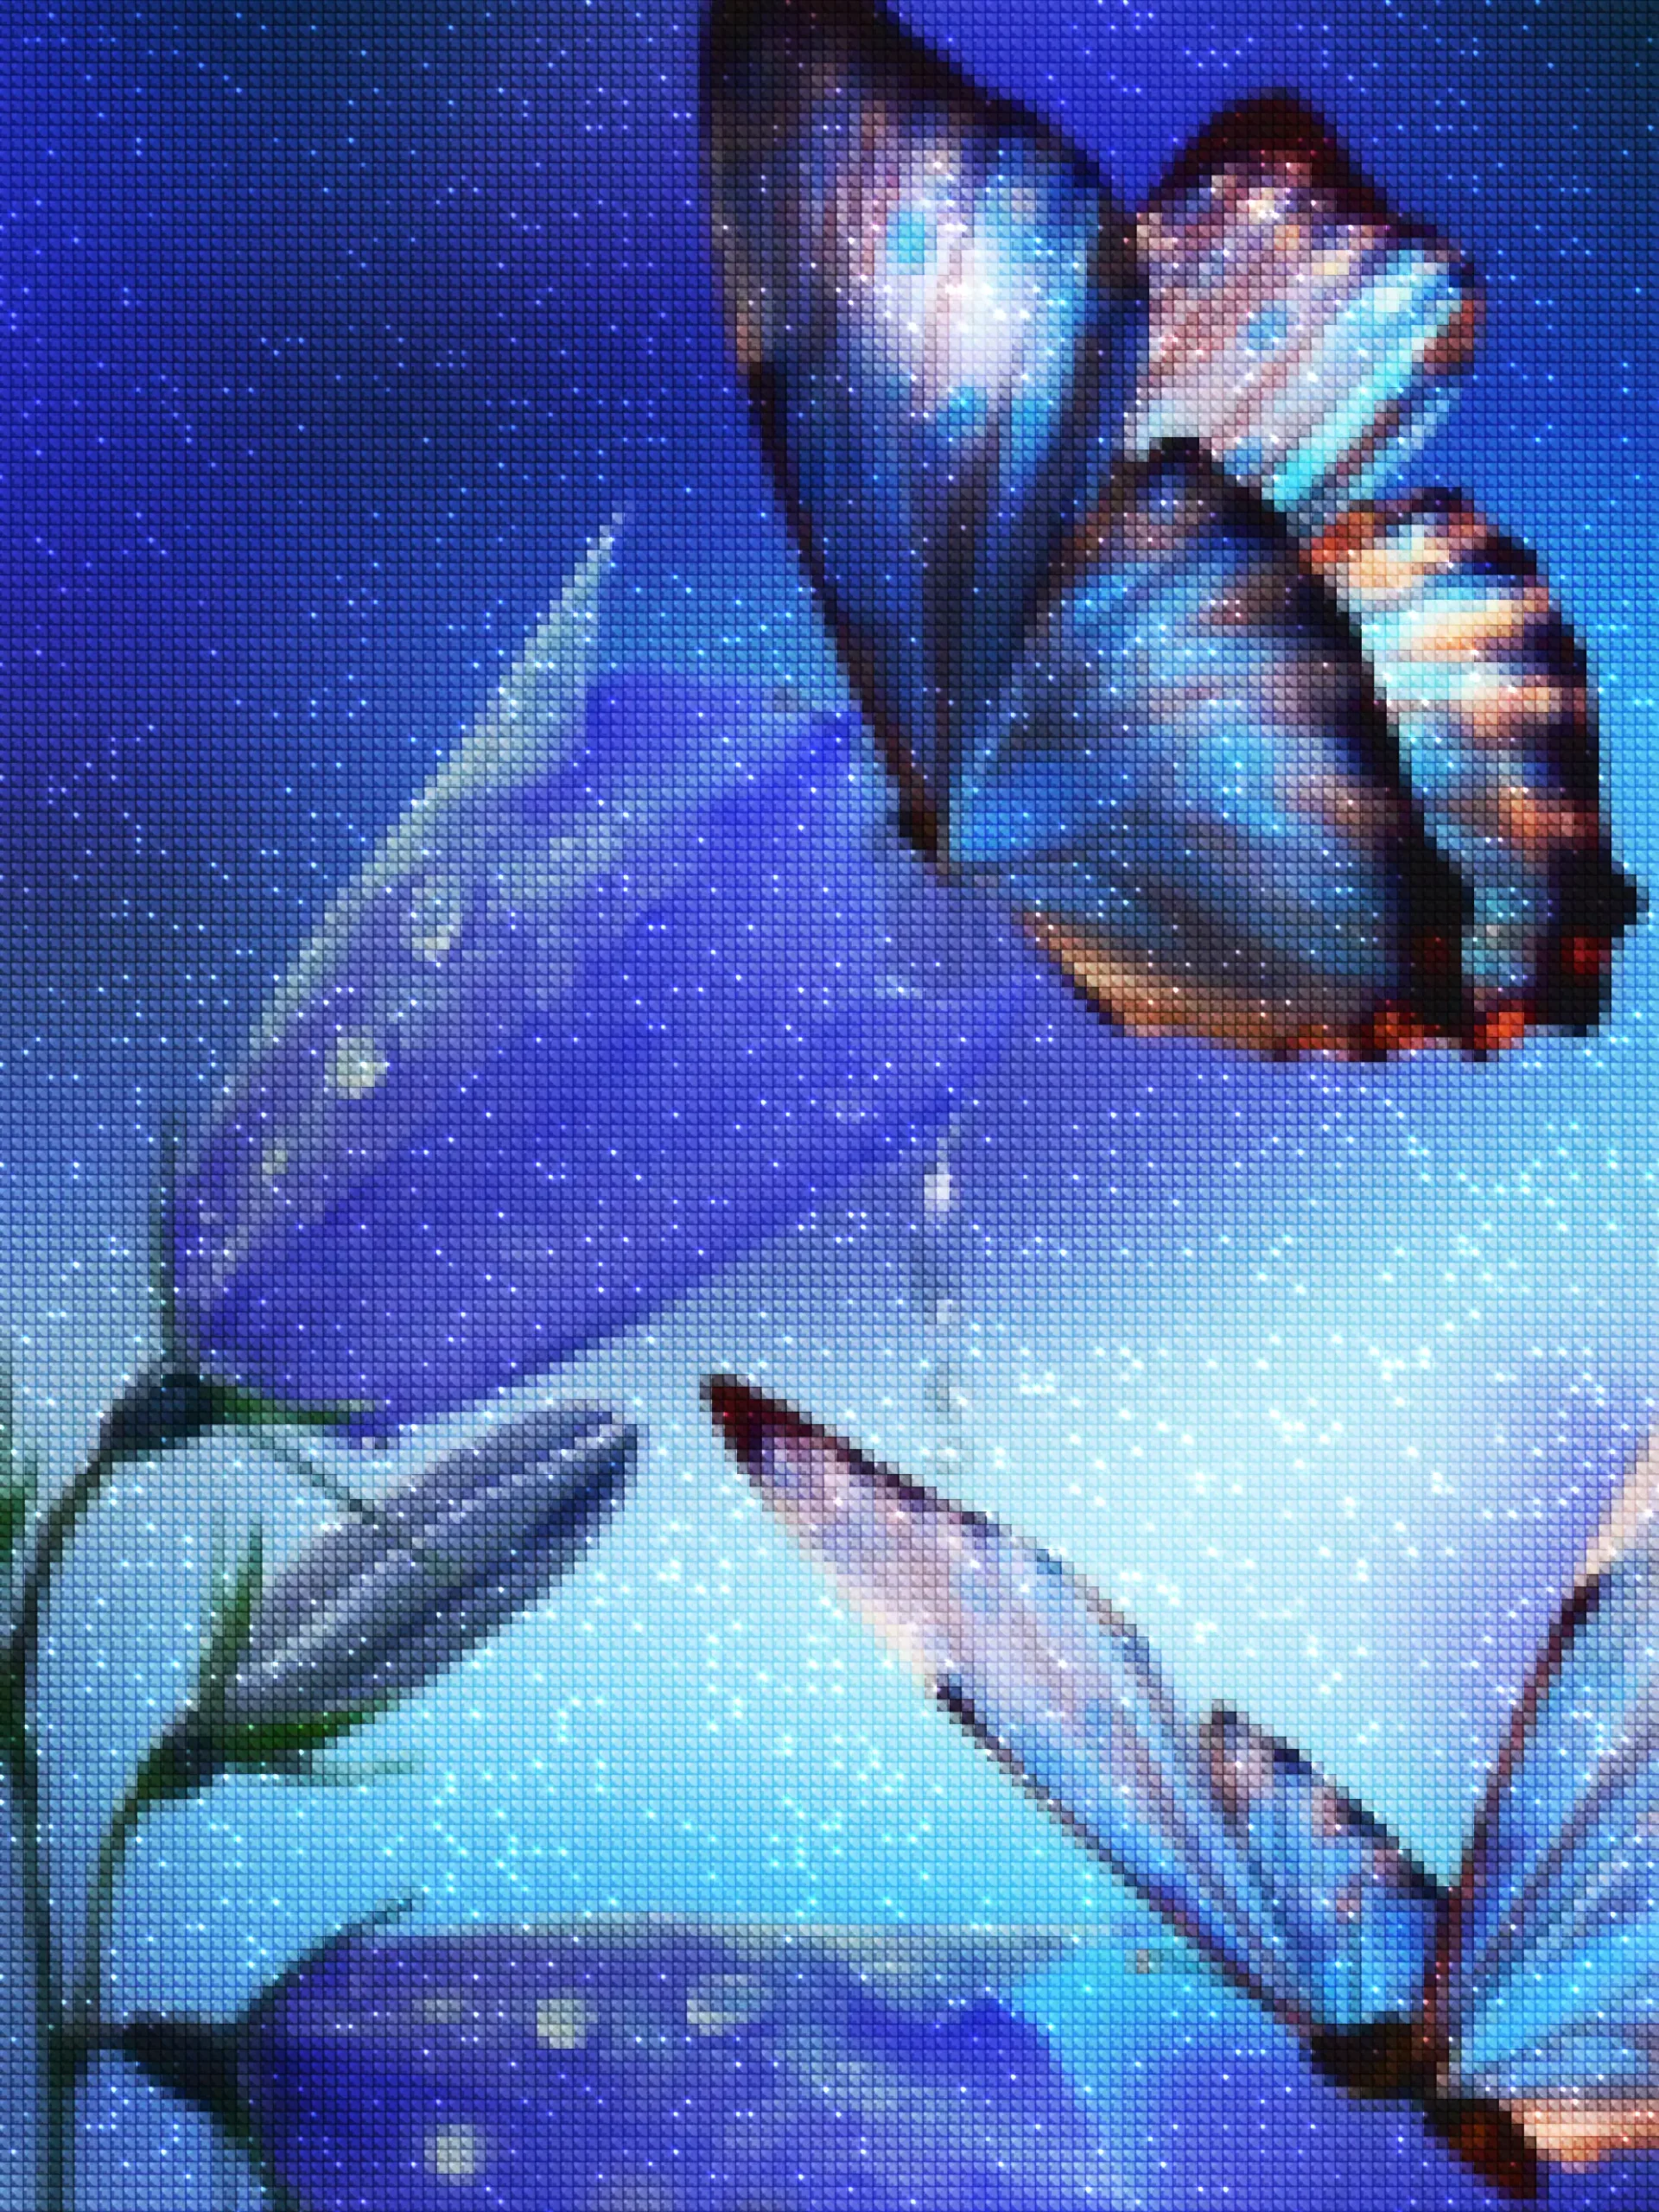 diamanten-tovenaar-diamant-schilderpakketten-natuur-vlinder-vlinders op een blauwe bloem-diamonds.webp